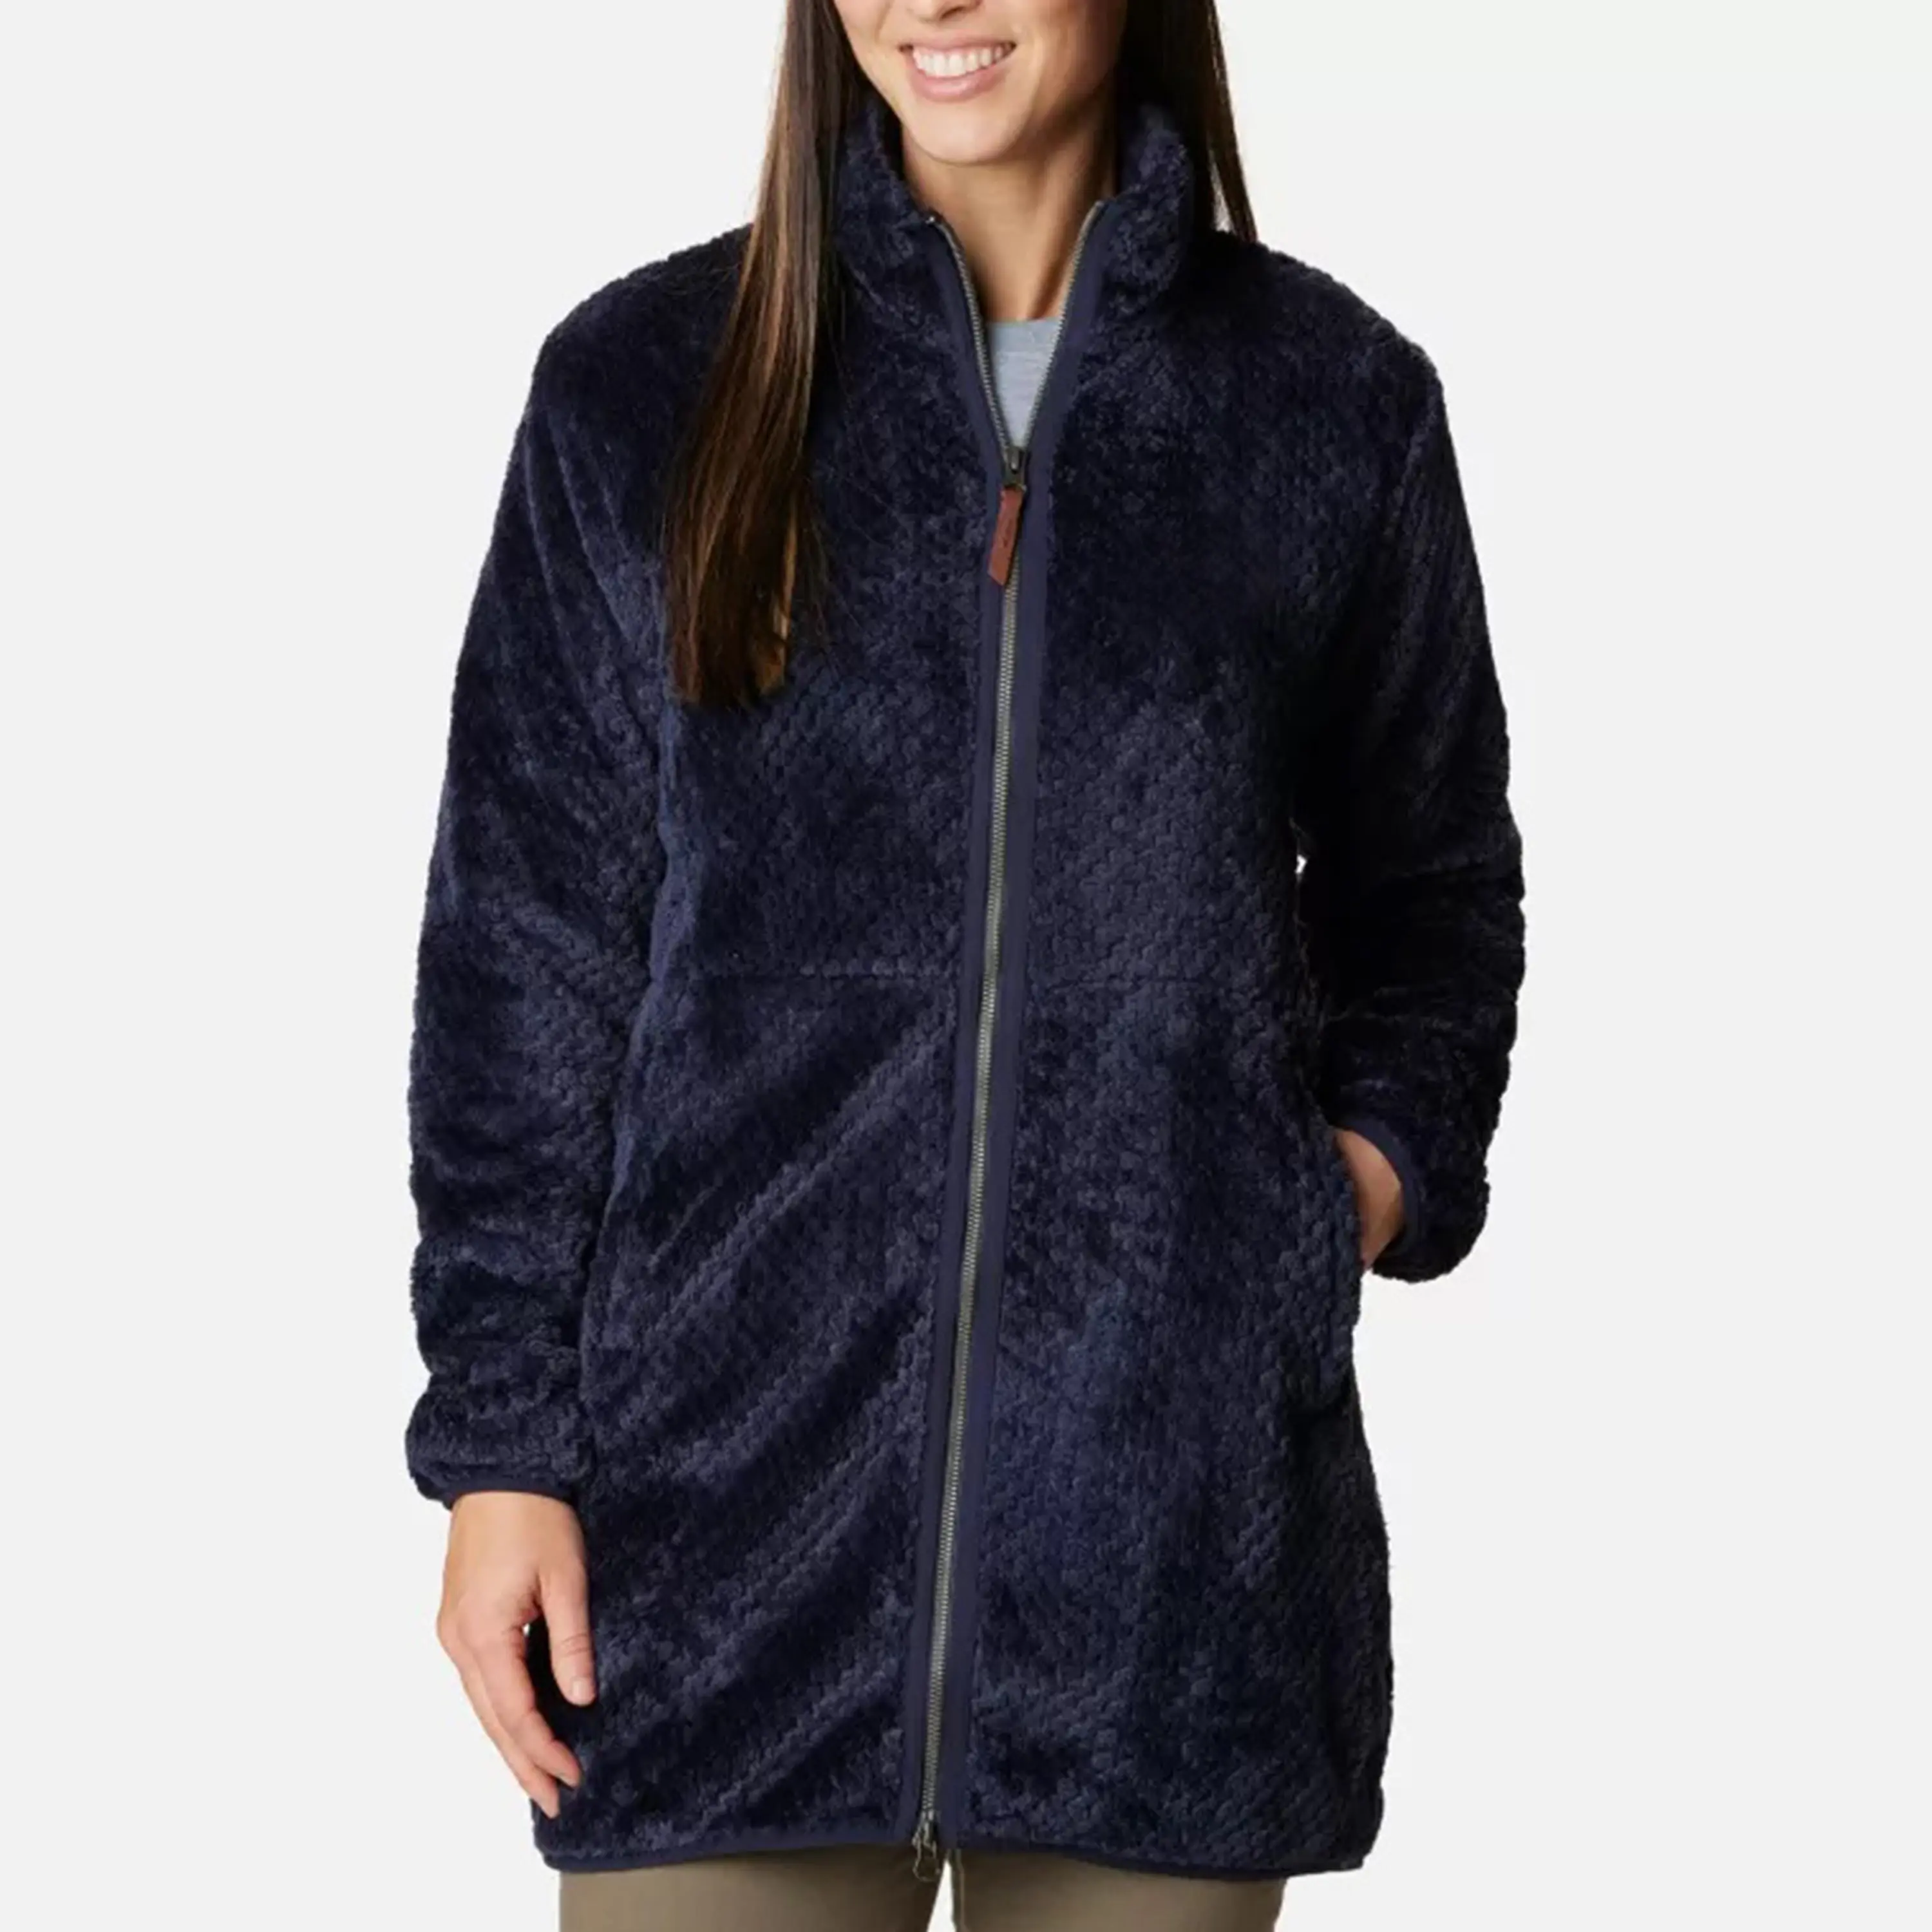 OEM özel üretici fabrika moda yeni özel kadın Polar Polar astarlı ön tam Zip ceket kürk ceket